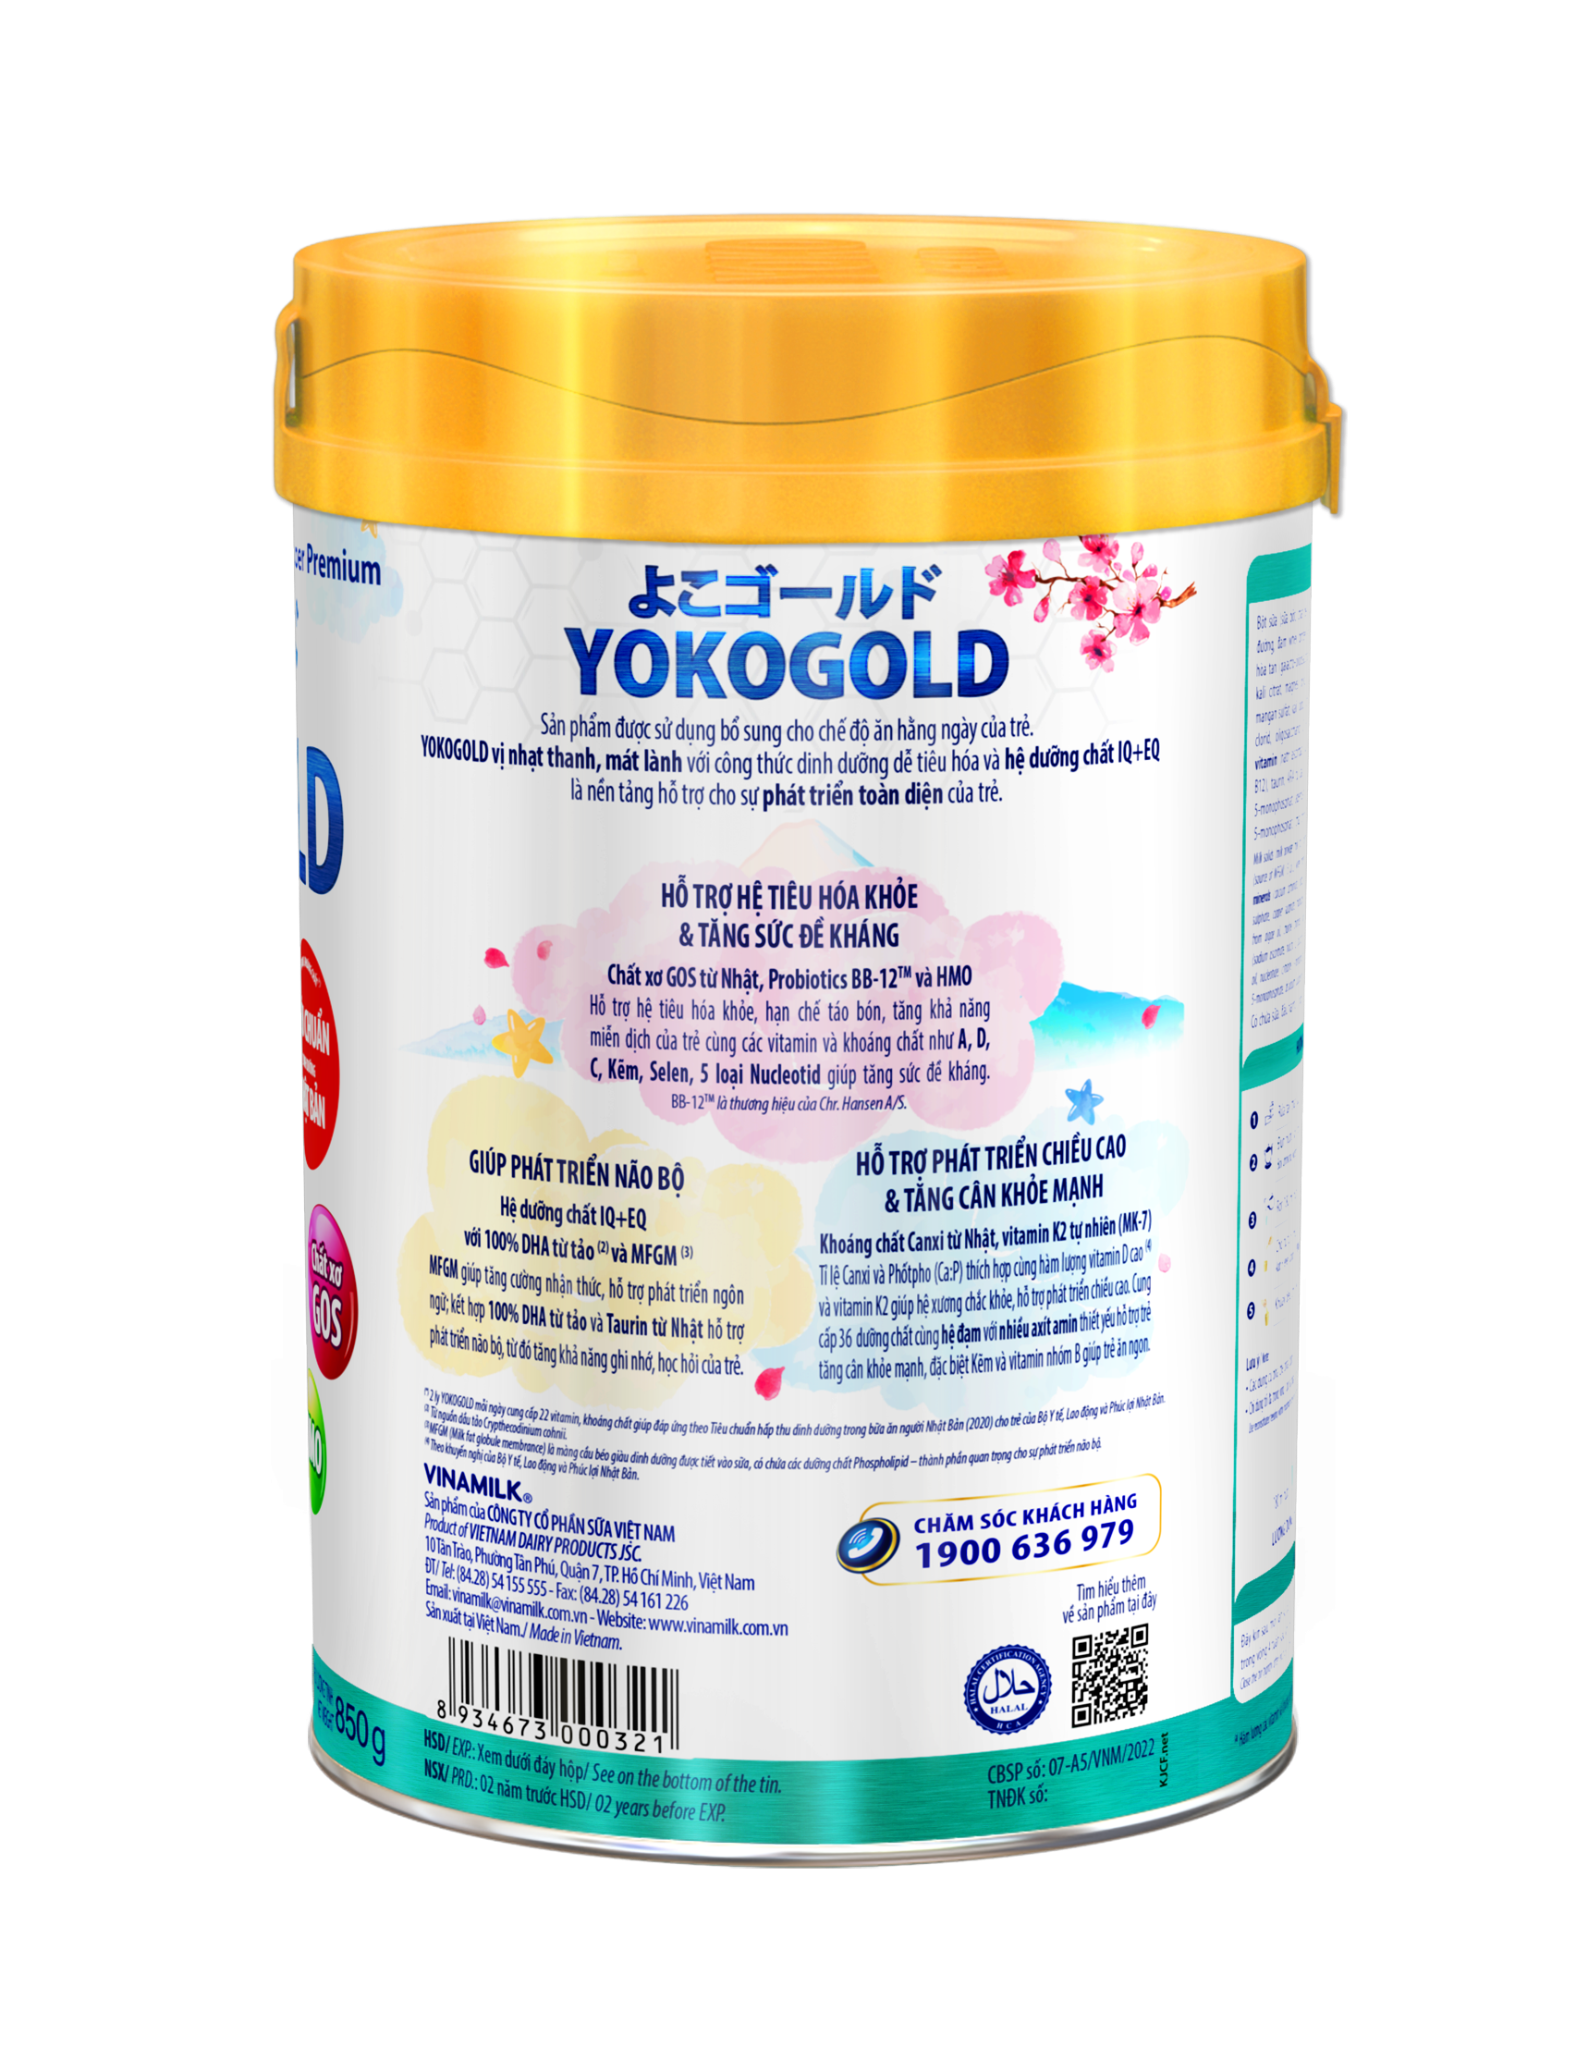 [TẶNG 1 BALO HÌNH VOI HOẶC 1 TÚI TÃ QUẦN JOECO] Sữa bột YOKOGOLD 3 - lon 850g (cho trẻ từ 2 - 6 tuổi)